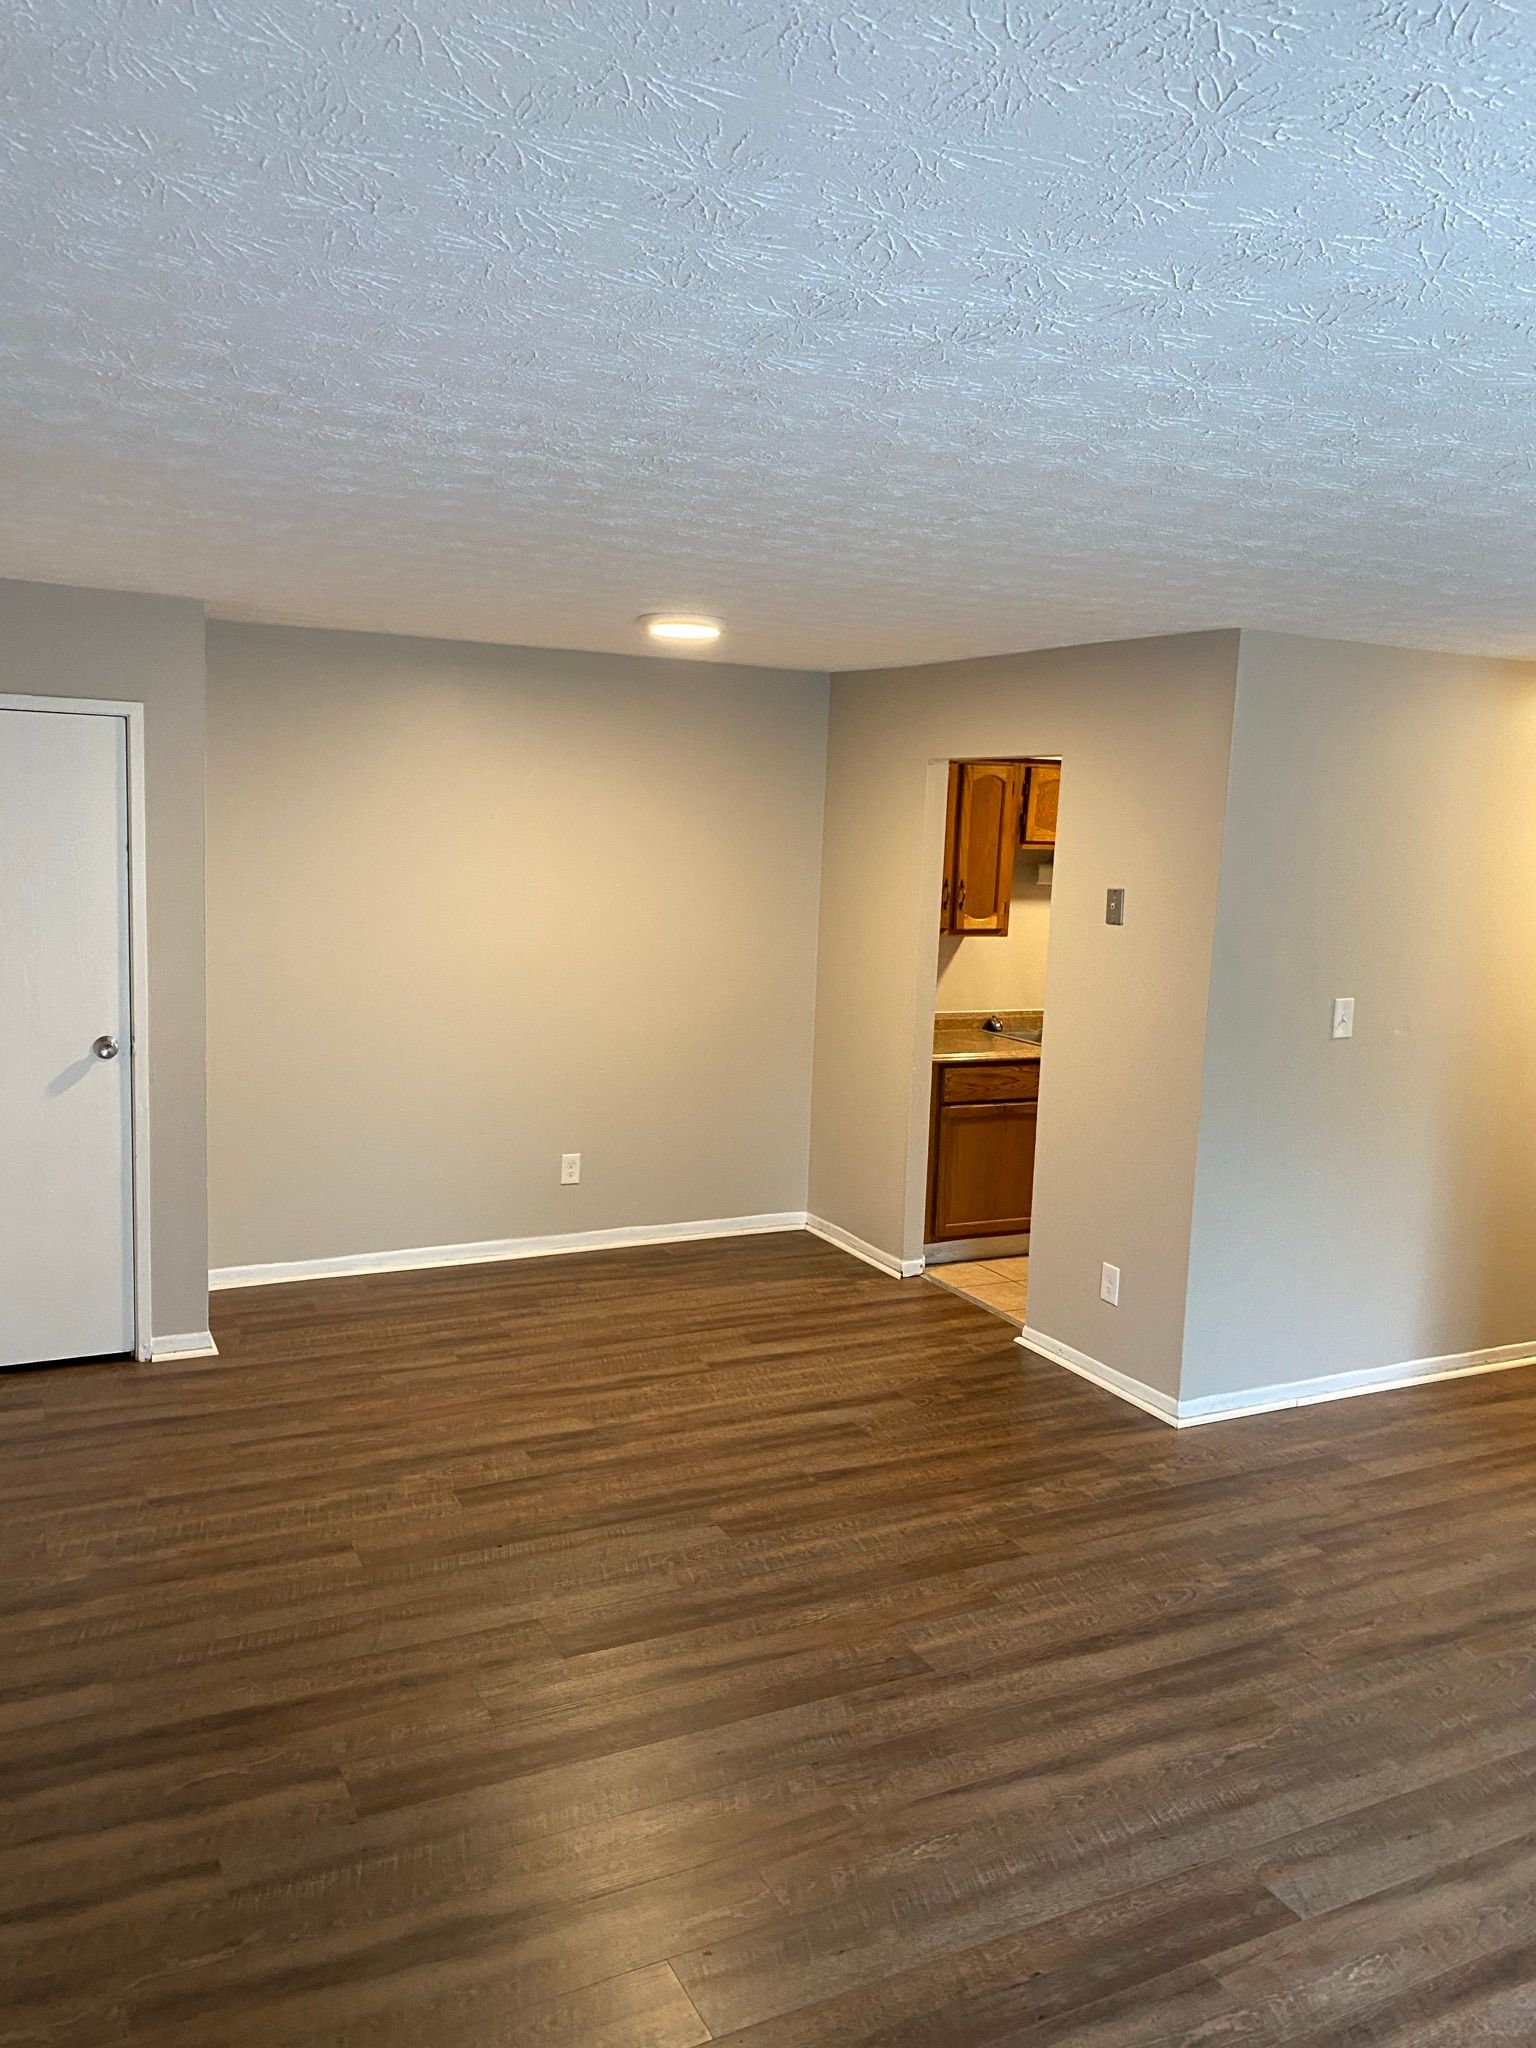 Yearling Court Apartments - Living room with hardwood floor with kitchen door